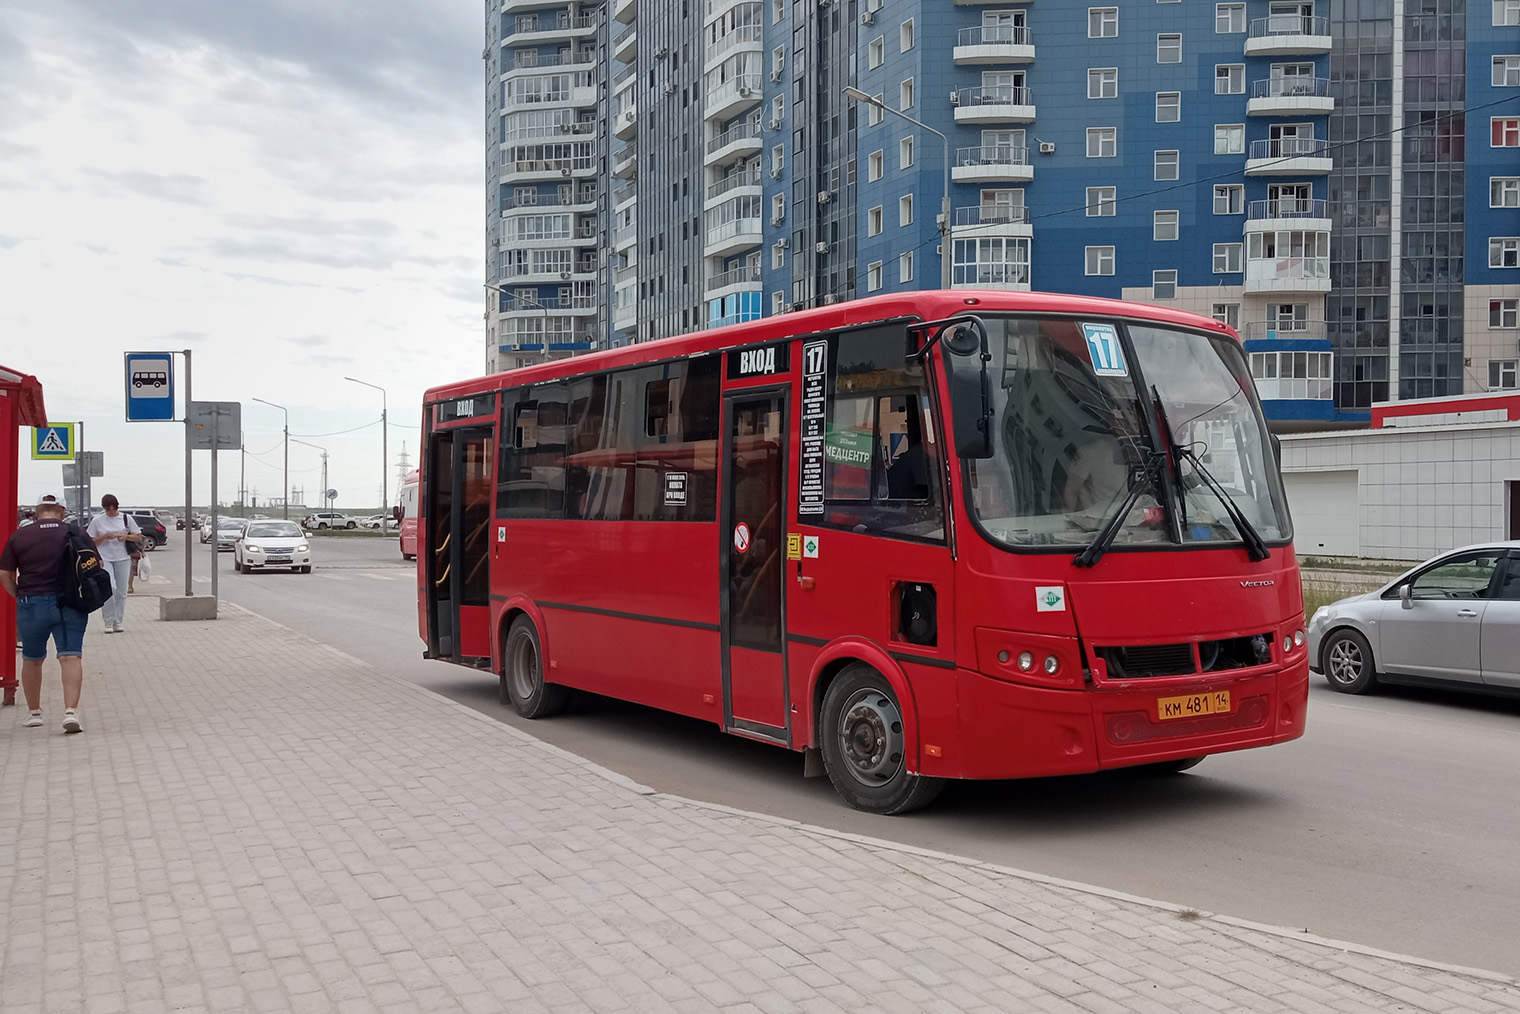 Старые автобусы на городских маршрутах постепенно заменяют новыми красными пазиками